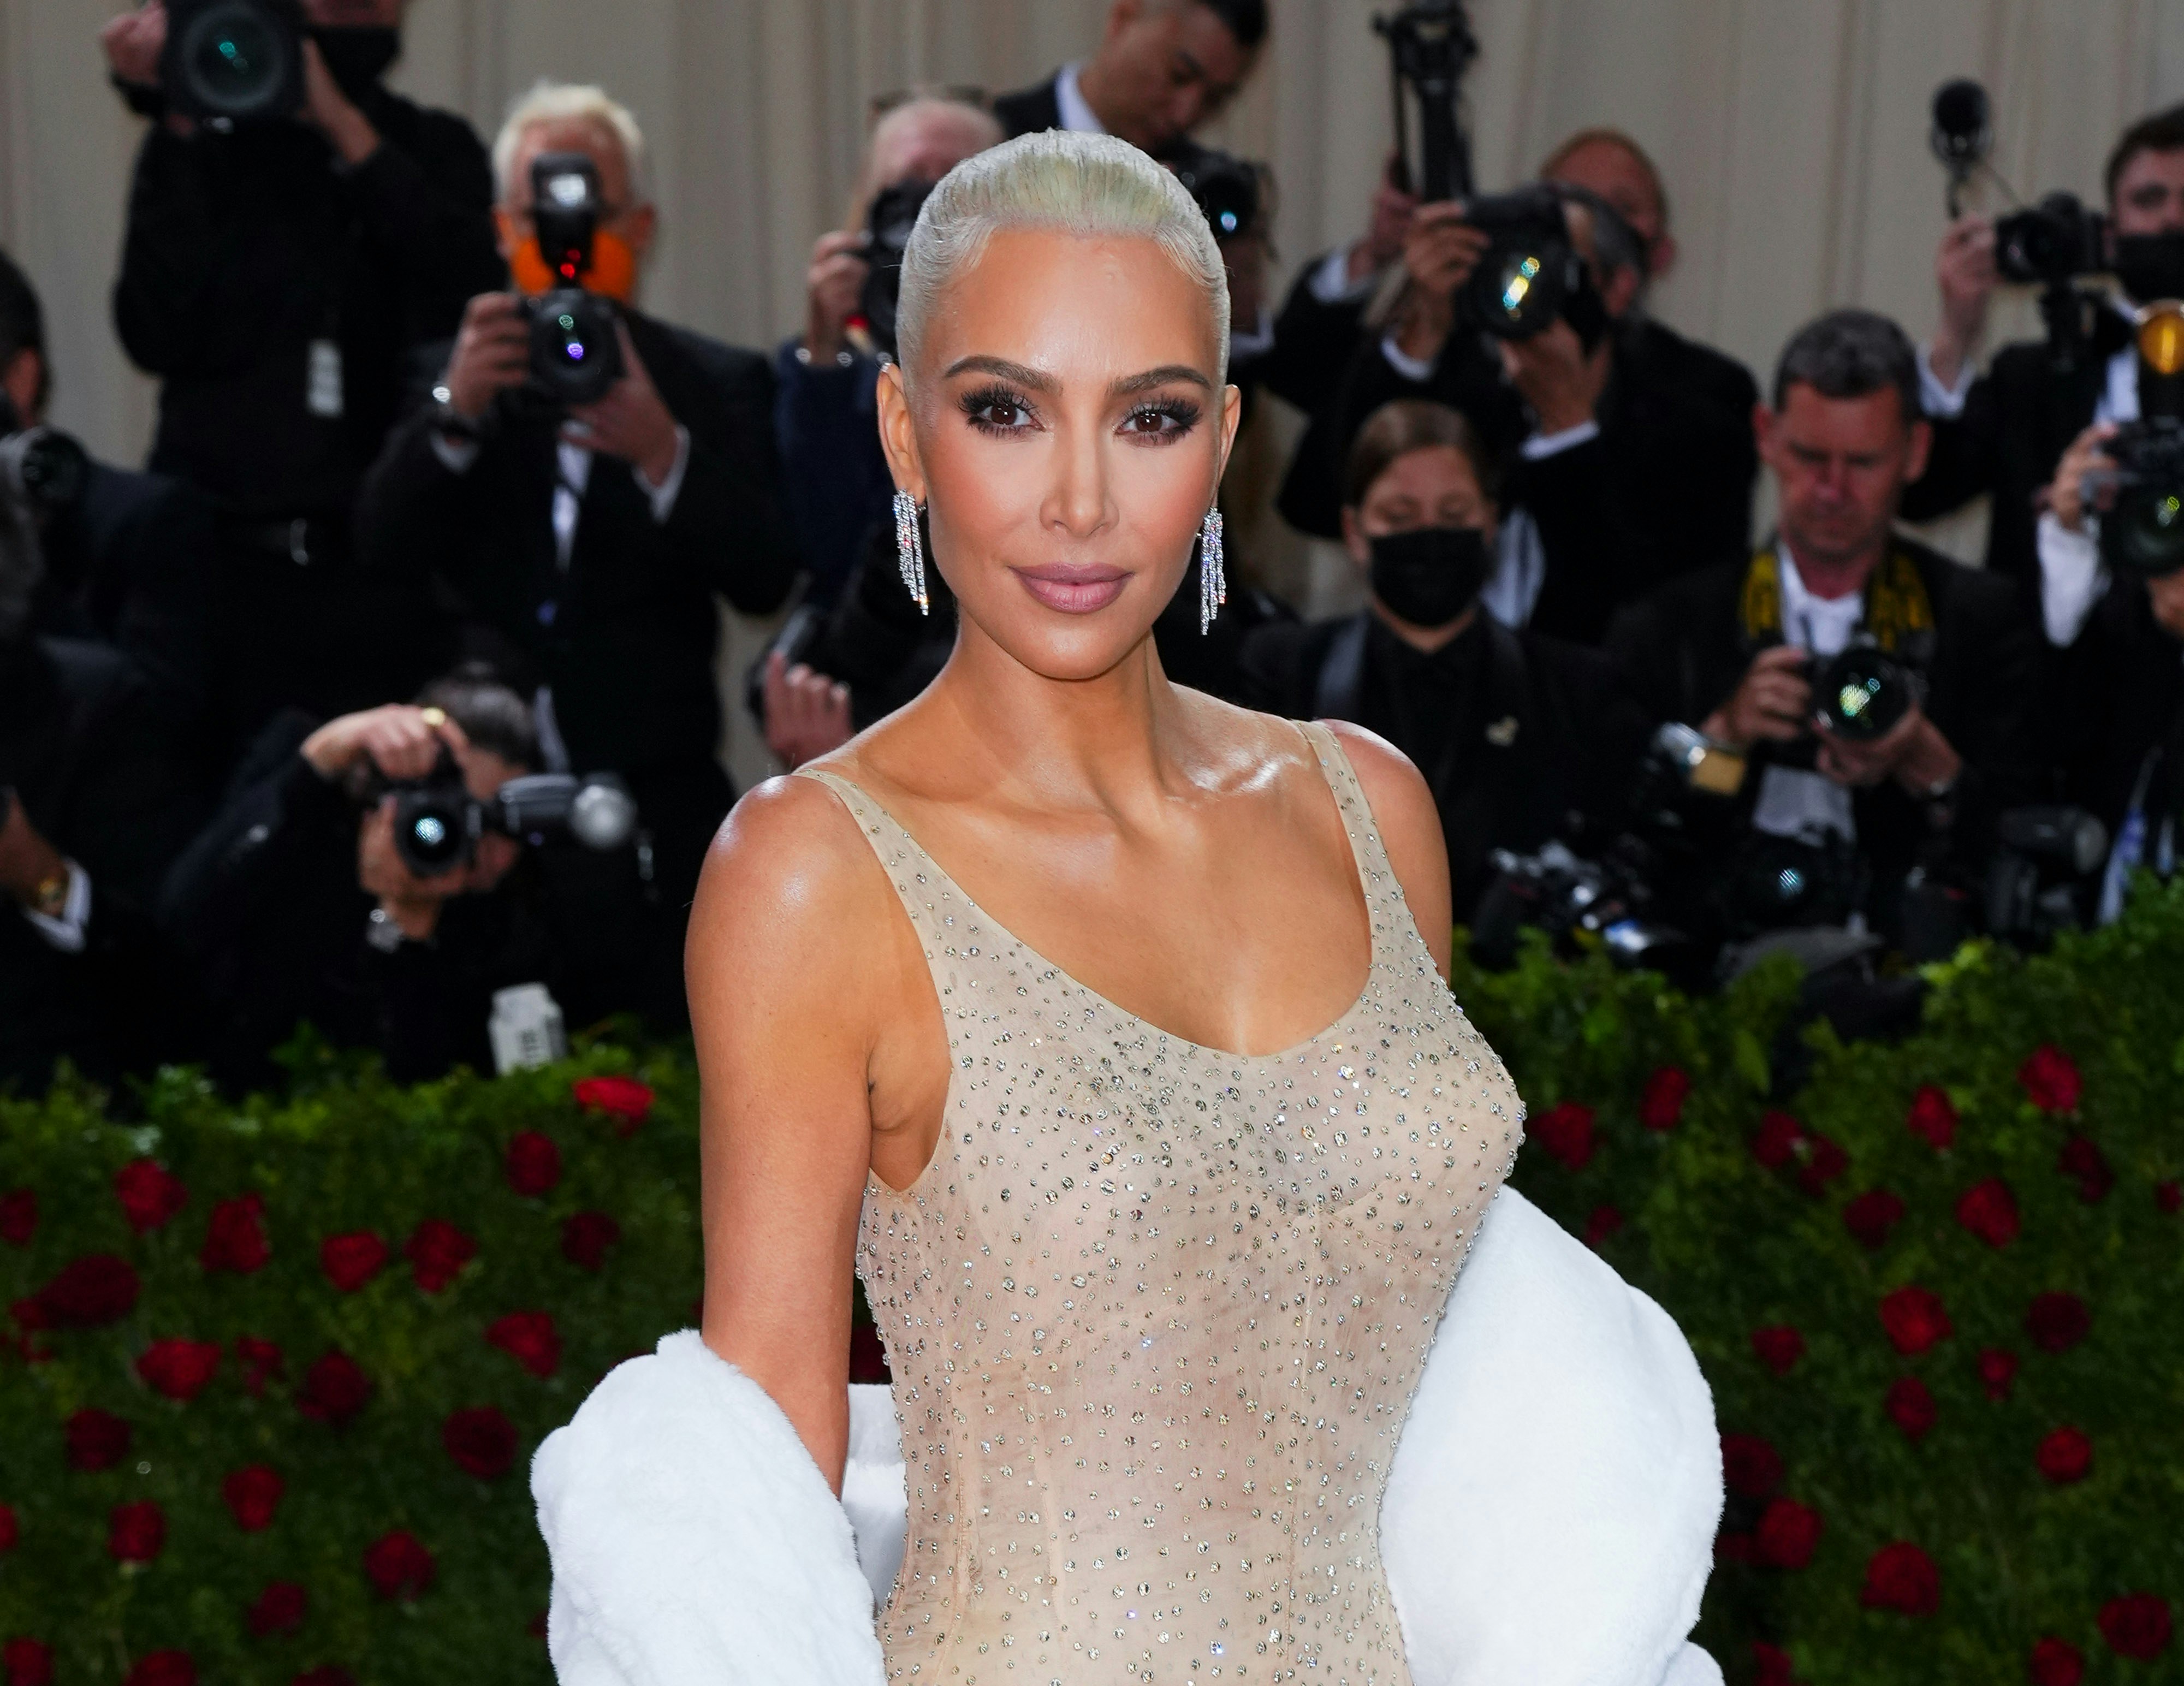 Don't Use 'Dangerous' Sauna Suits Like Kim Kardashian, Doctor Says